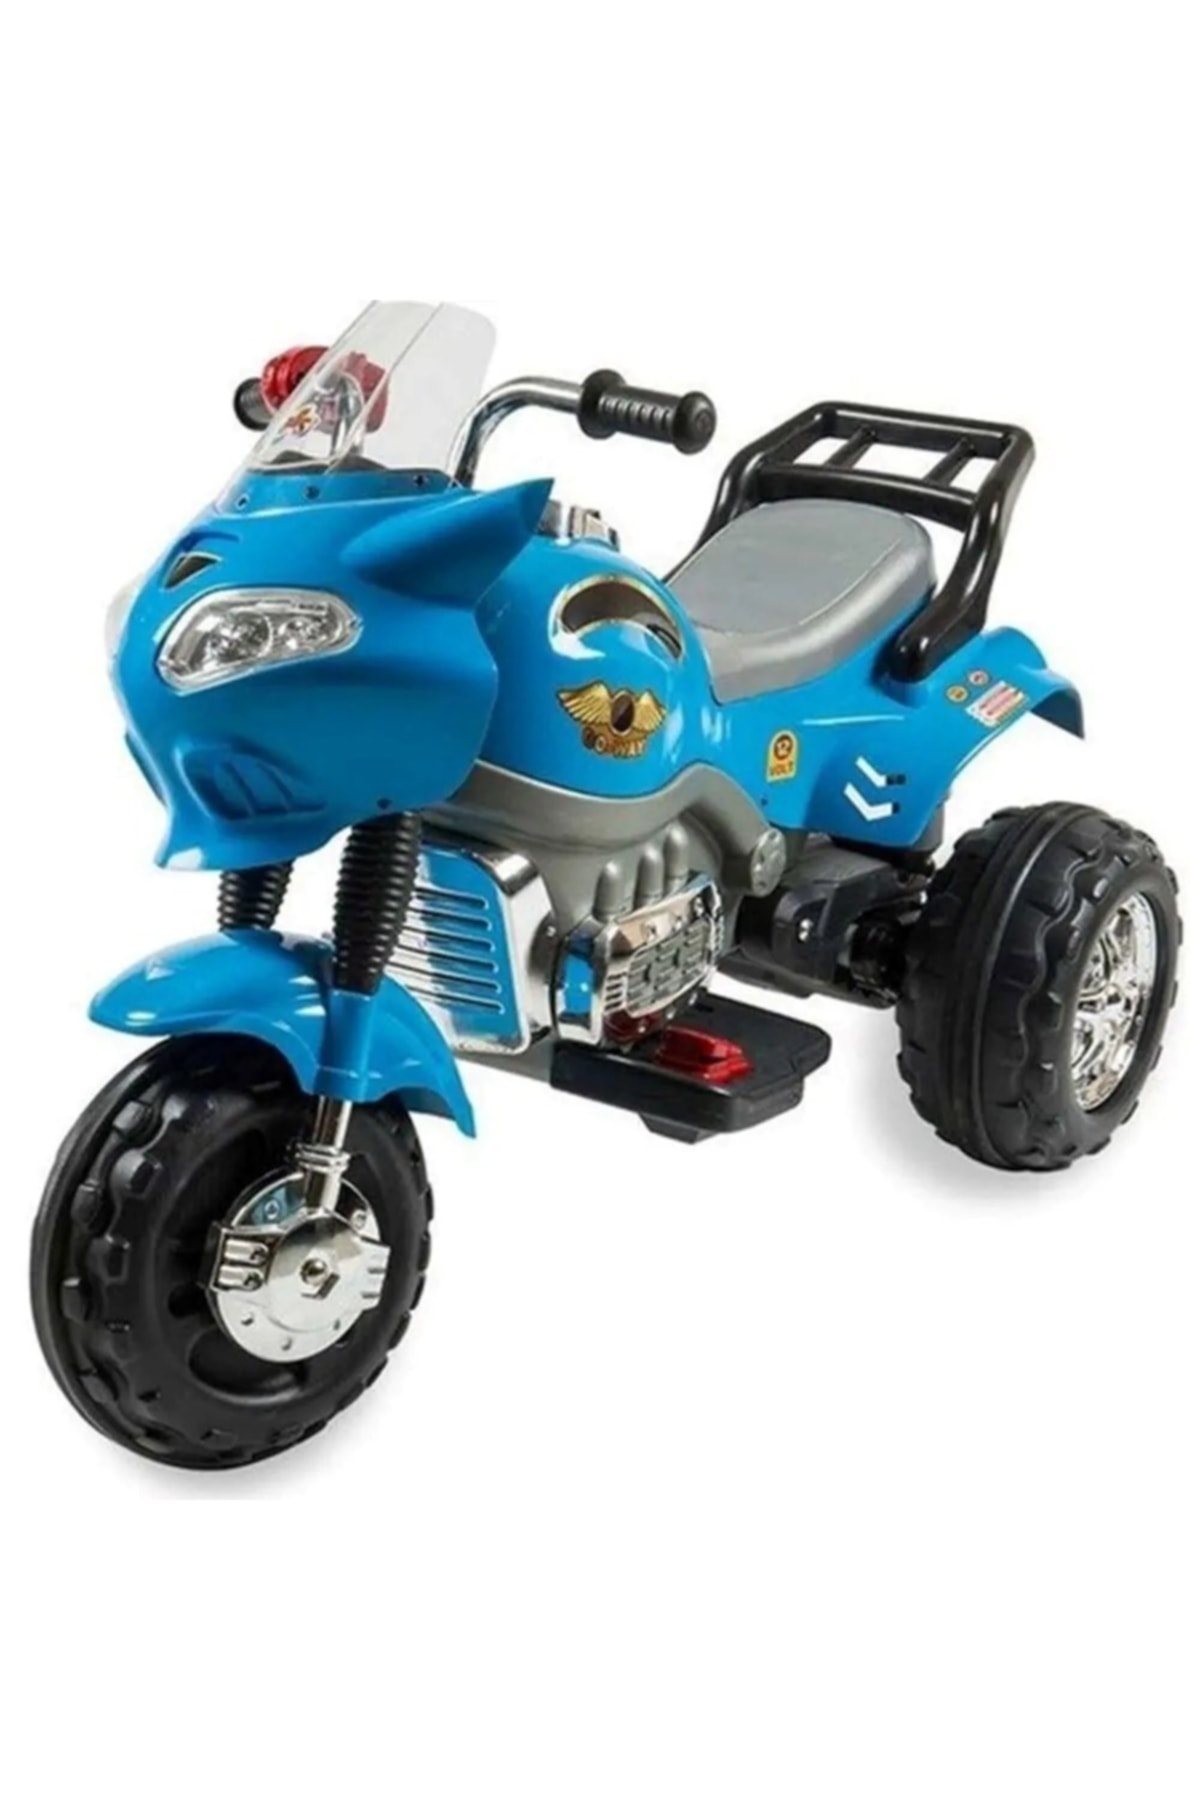 Aliş Toys Aliş Akülü Go Way Motorsiklet 404 Mavi